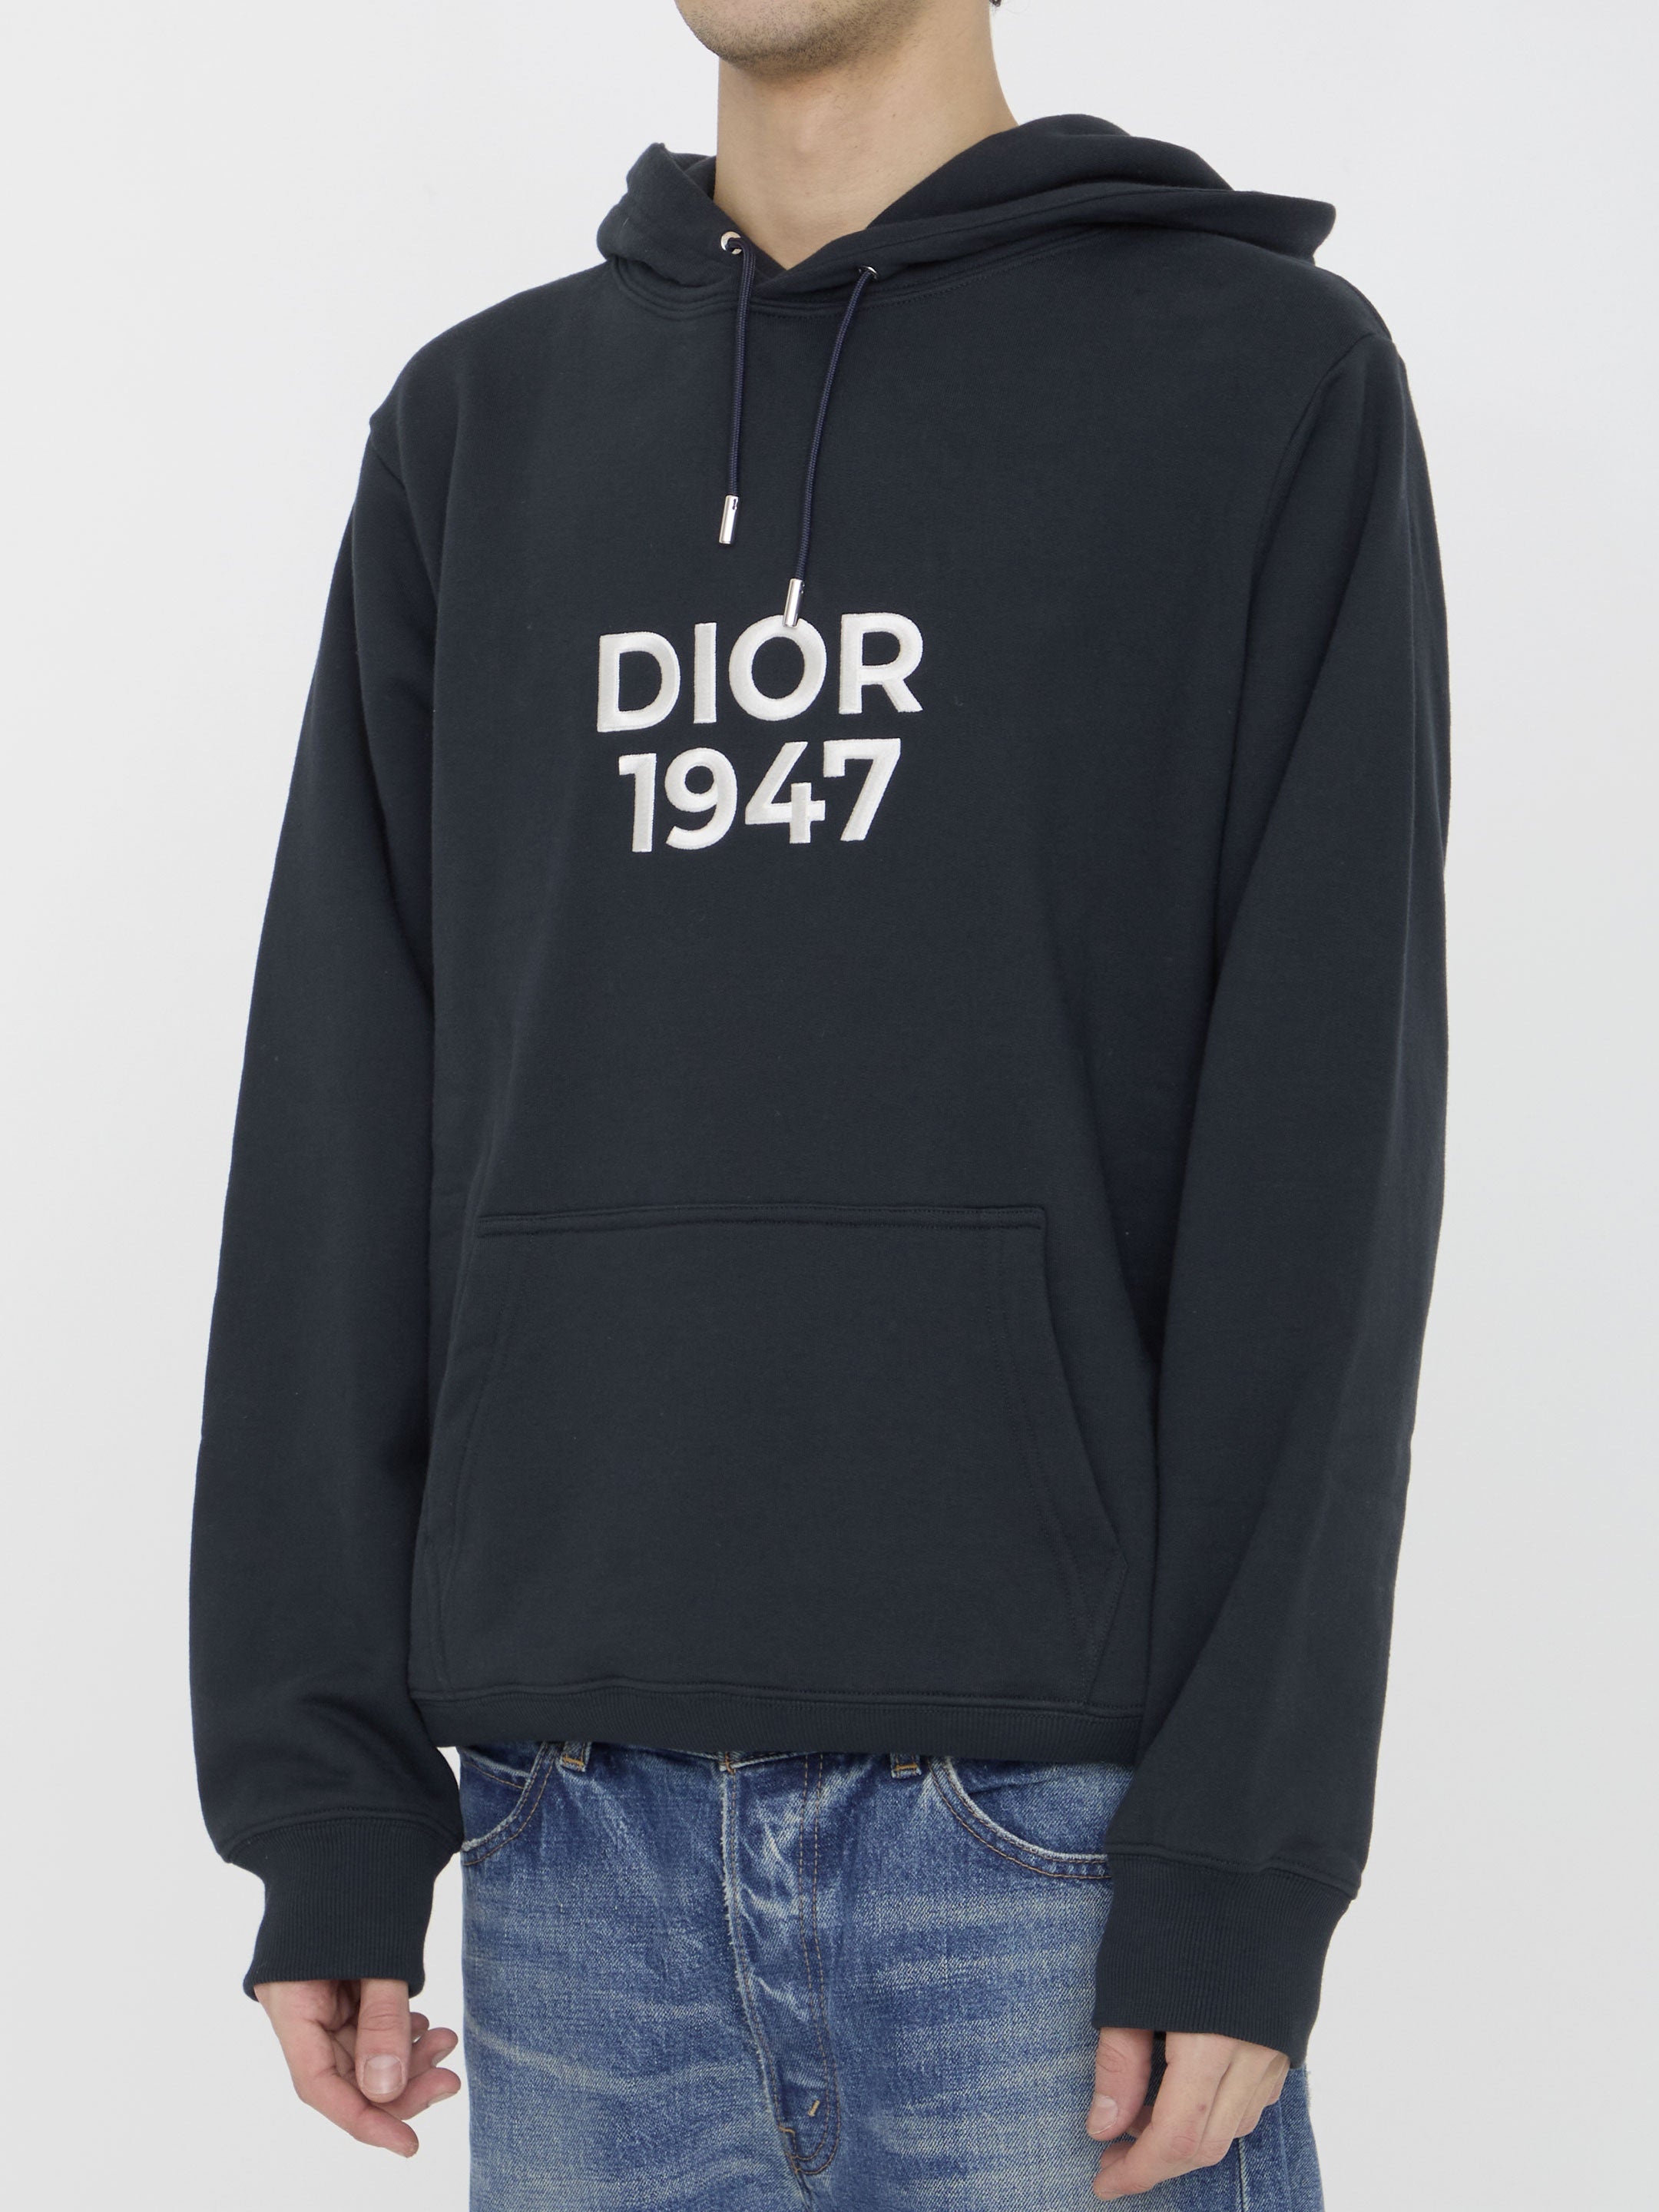 Dior 1947 hoodie